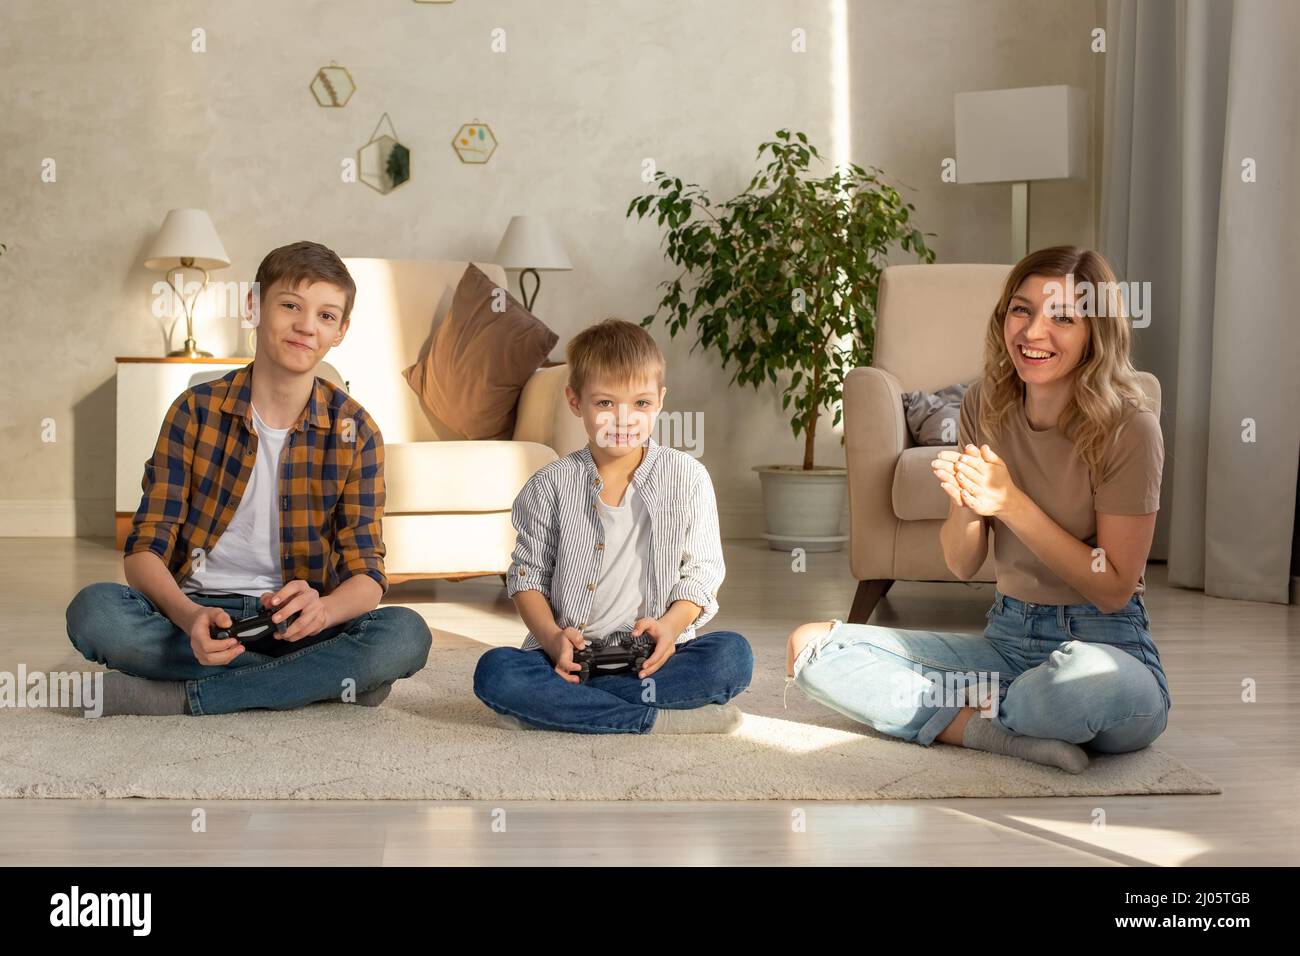 Ritratto di due ragazzi e donna felice si siede sul pavimento in una stanza che gioca video giochi con joystick Foto Stock